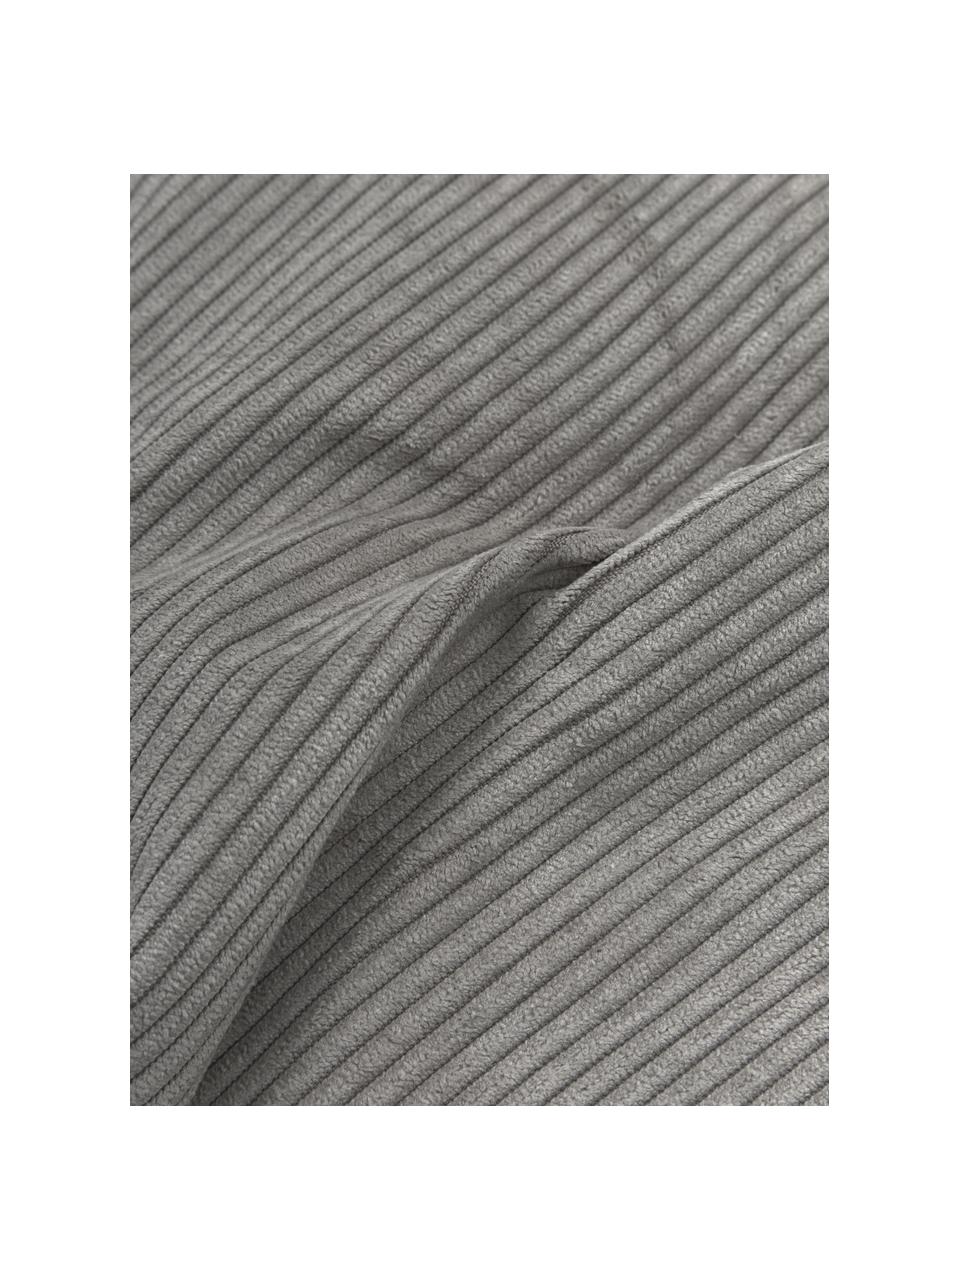 Bankkussen Lennon in grijs van corduroy, Corduroy grijs, B 60 x L 60 cm